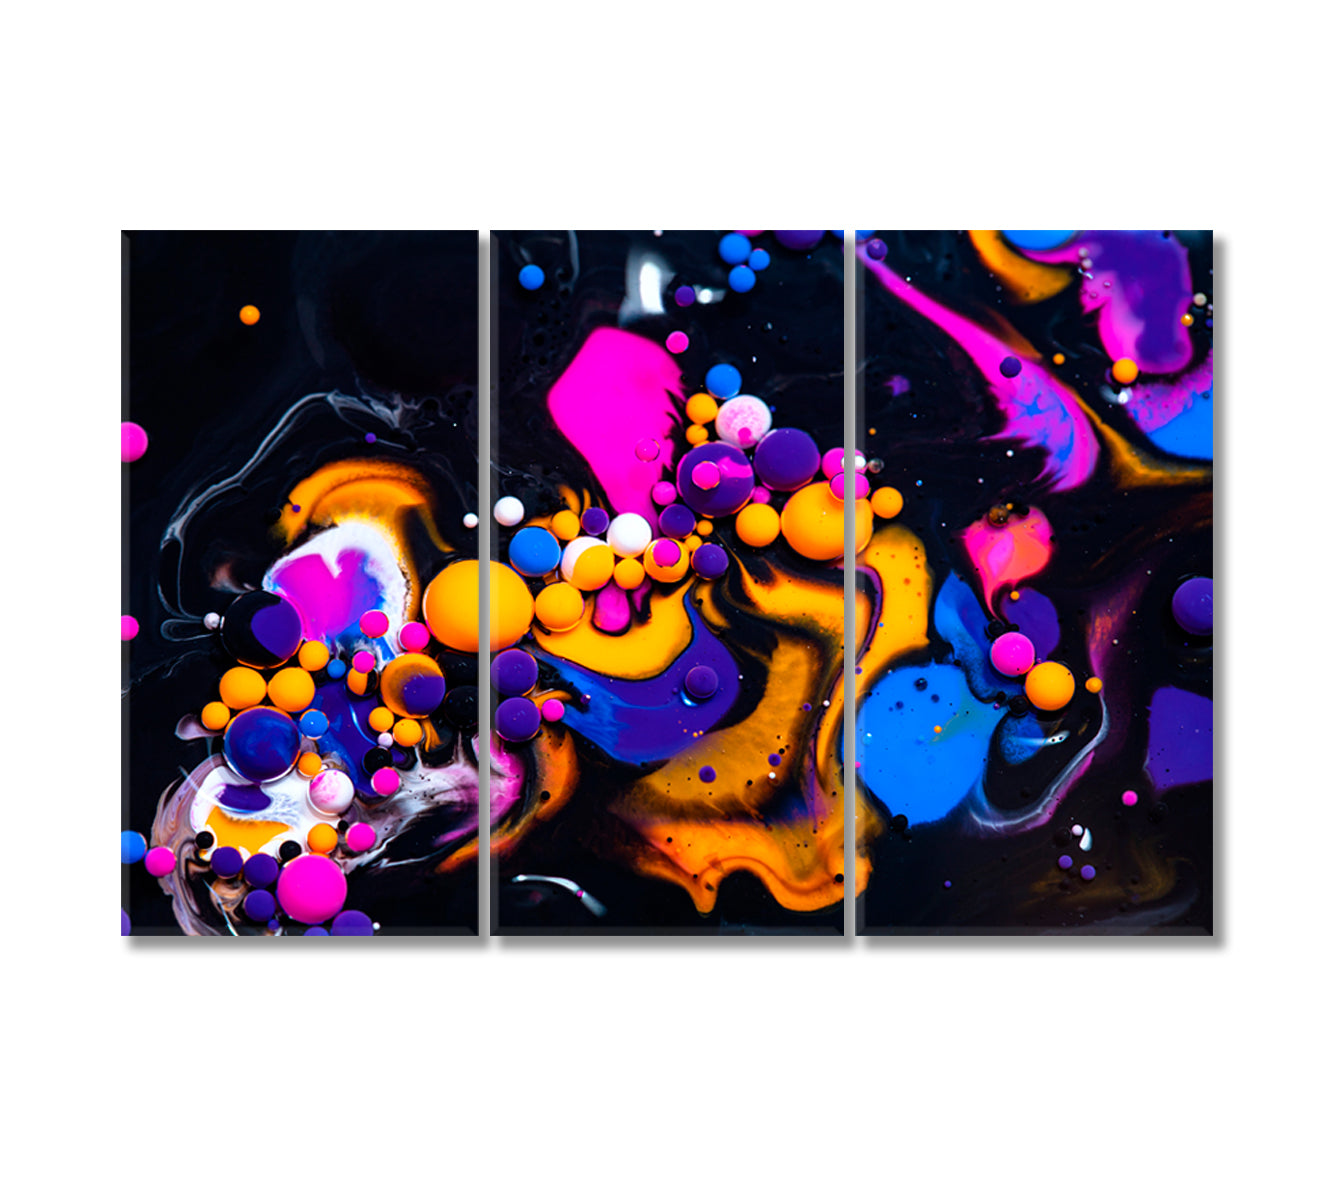 Abstract Liquid Bubbles Canvas Print-Canvas Print-CetArt-3 Panels-36x24 inches-CetArt